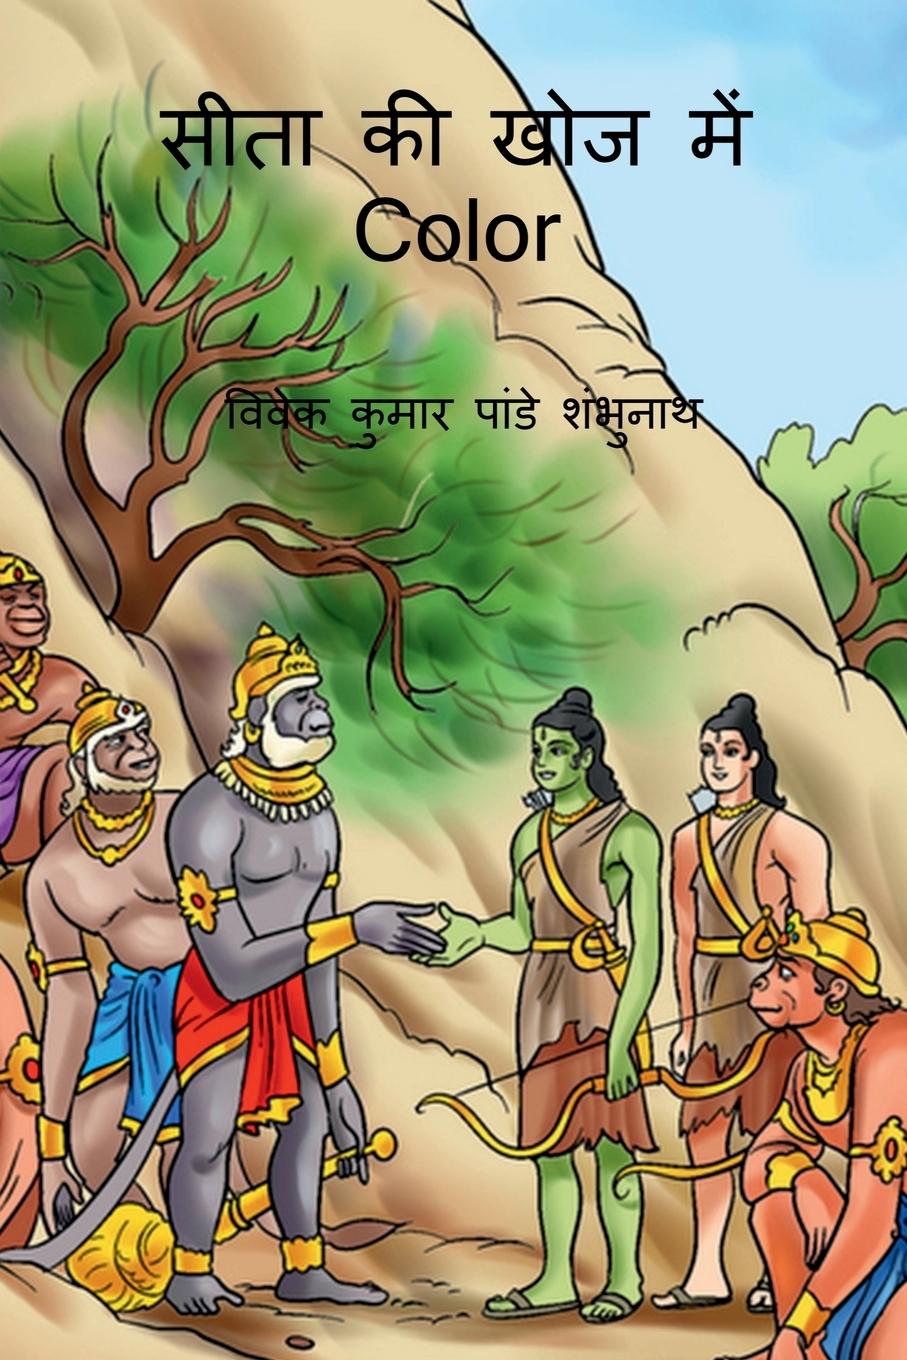 Kniha Sita Ki Khoj Main Color / &#2360;&#2368;&#2340;&#2366; &#2325;&#2368; &#2326;&#2379;&#2332; &#2350;&#2375;&#2306; Color 